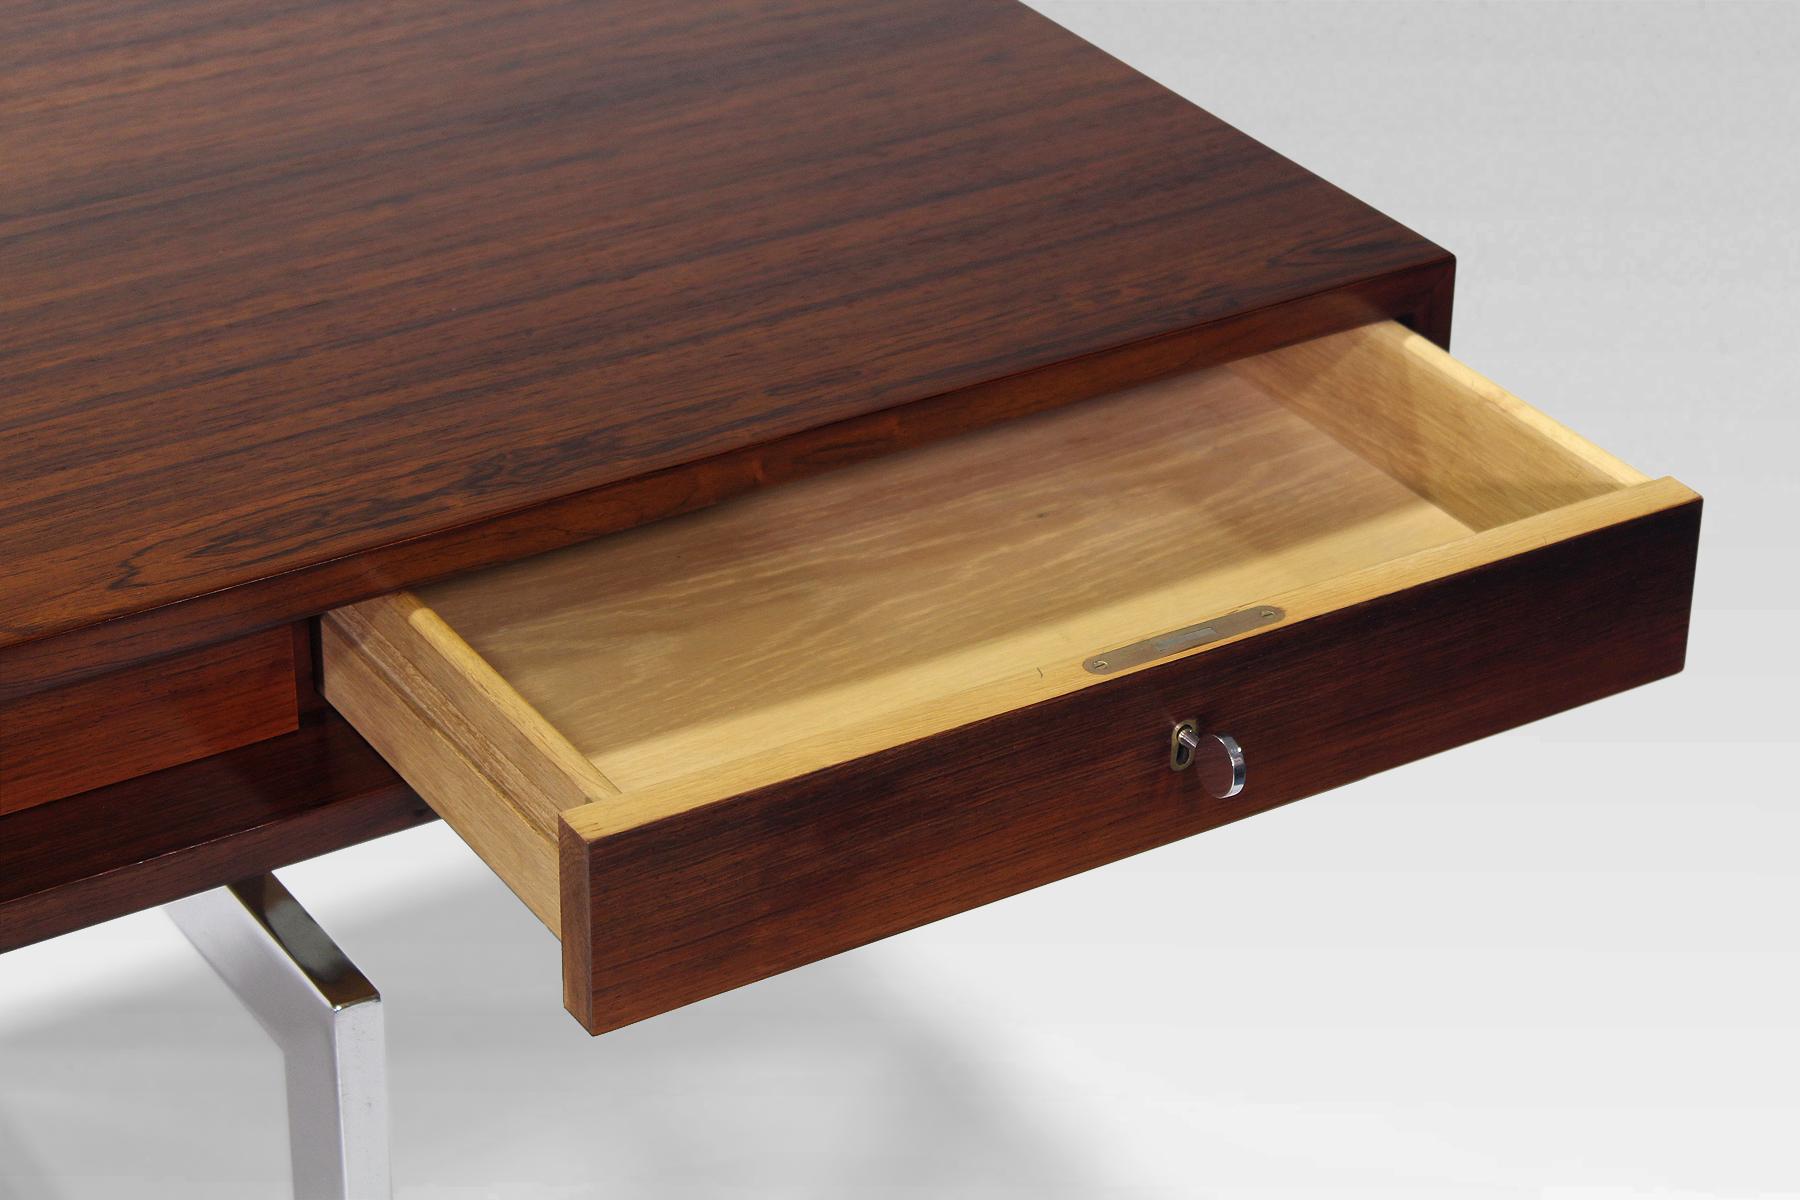 Rare Rosewood Desk by Bodil Kjaer 1